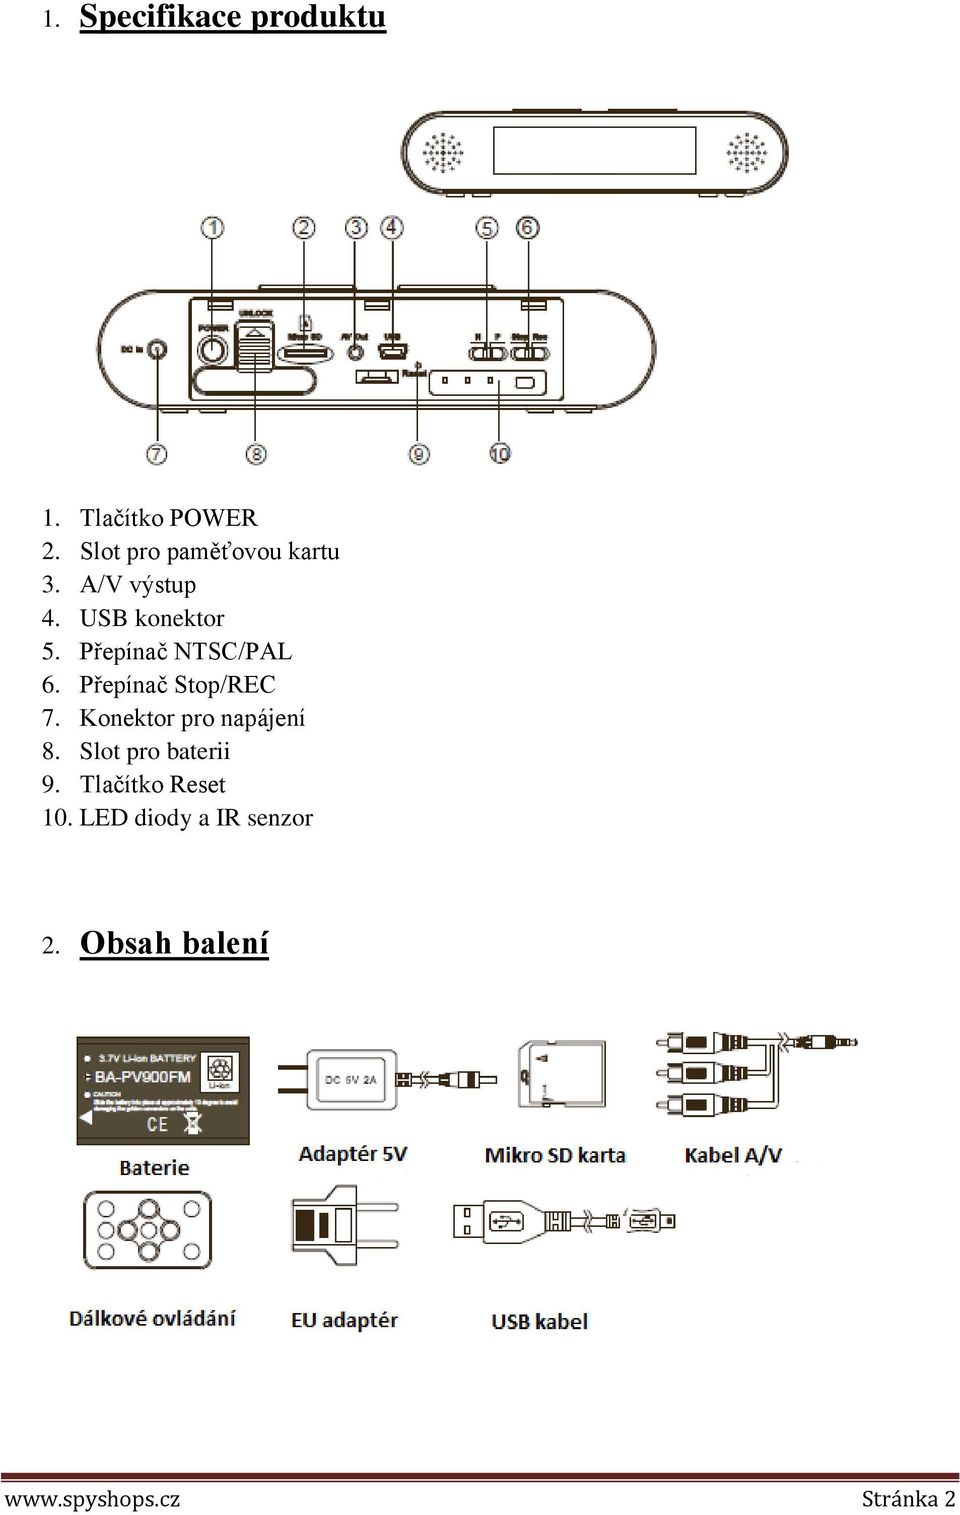 Přepínač NTSC/PAL 6. Přepínač Stop/REC 7. Konektor pro napájení 8.